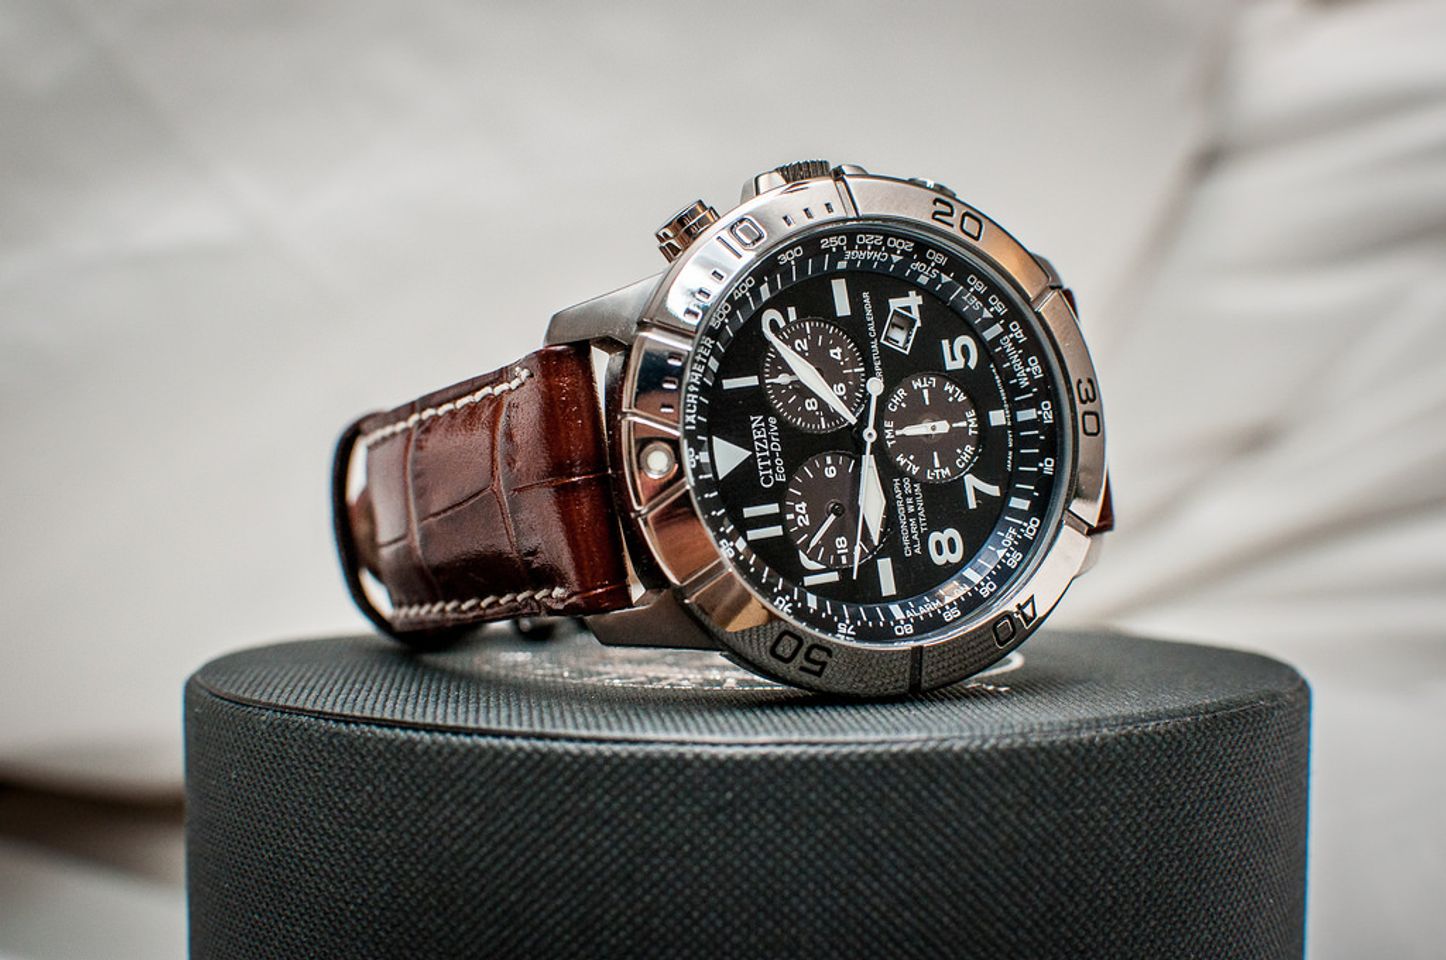 Chiếc đồng hồ Citizen nam này được tích hợp đầy đủ các năng của một chiếc đồng hồ cao cấp